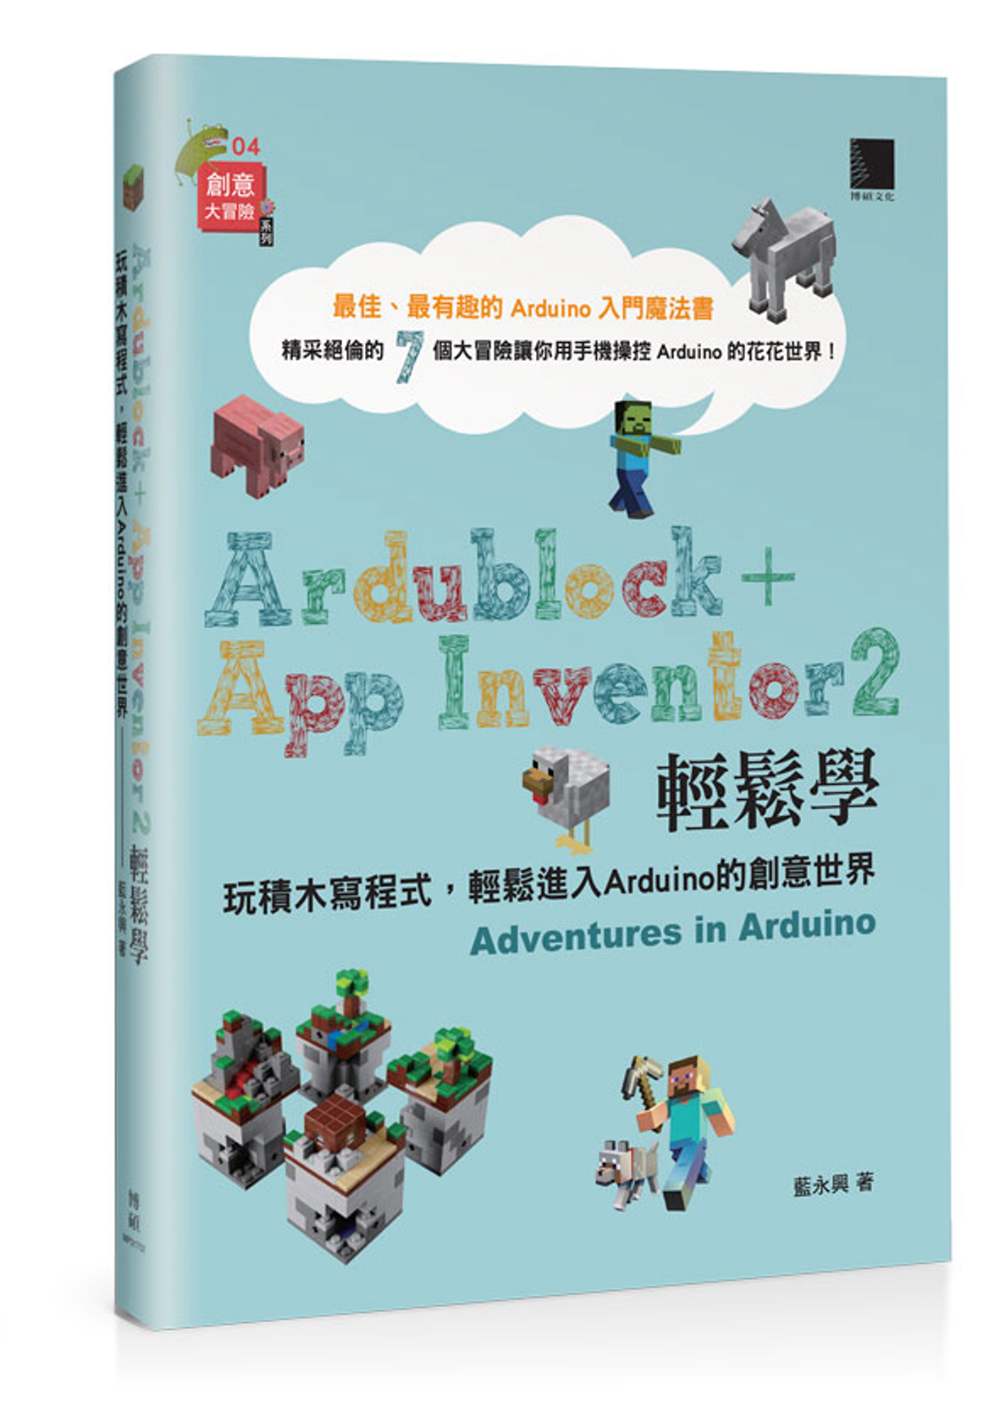 Ardublock + App Inventor 2 輕鬆學：玩積木寫程式，輕鬆進入Arduino的創意世界